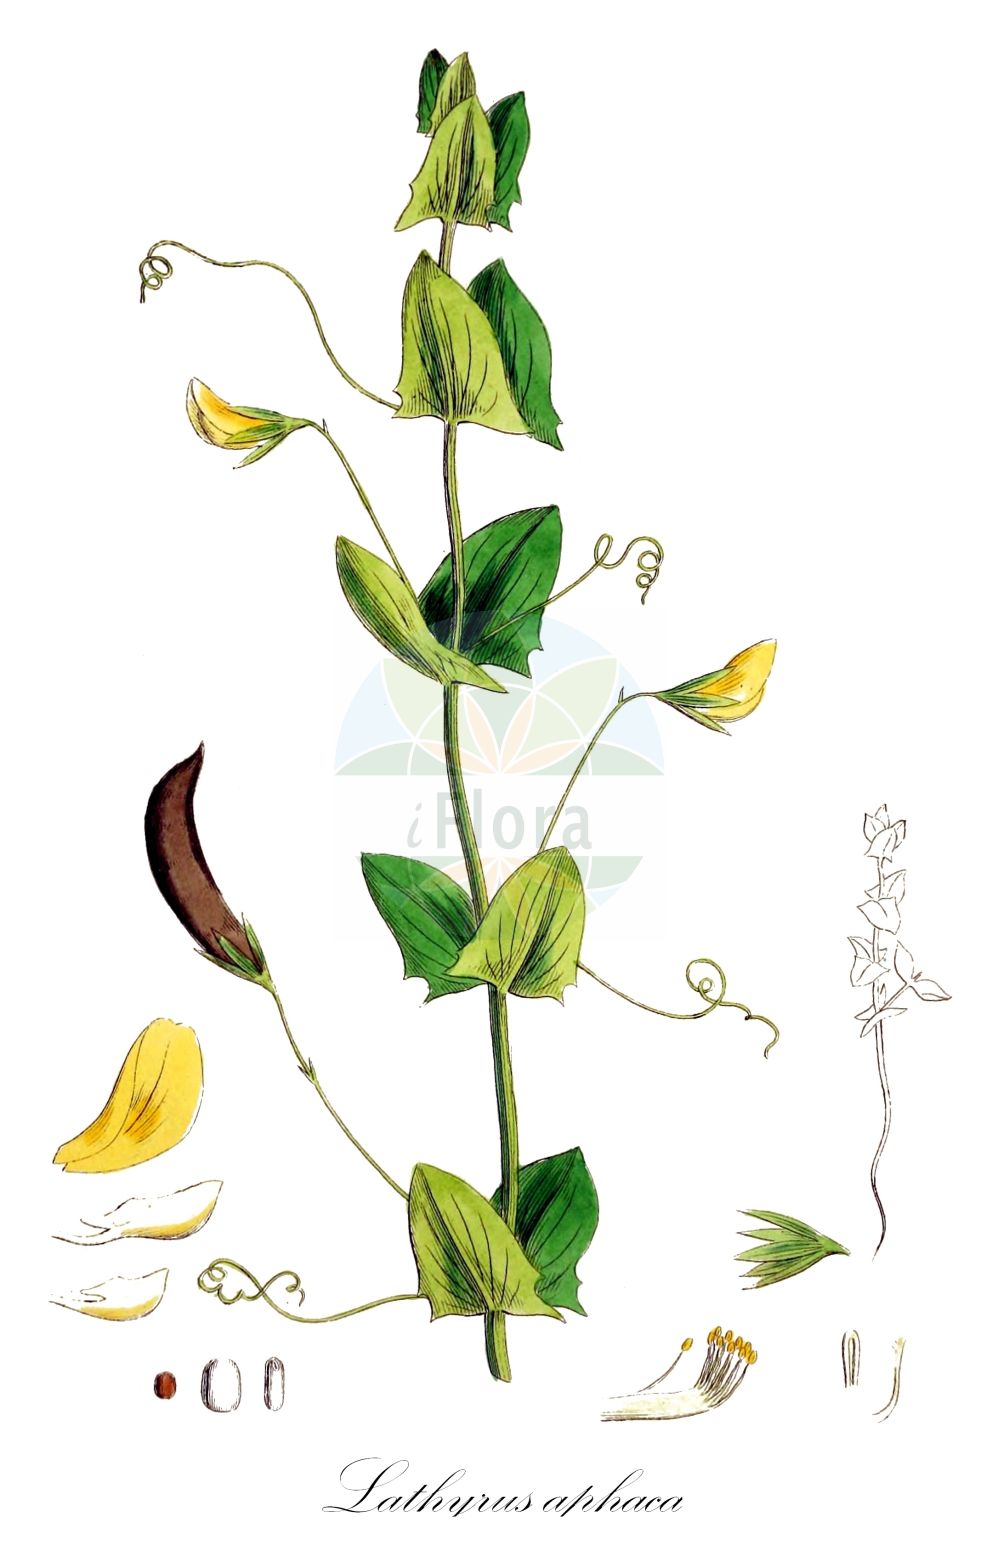 Historische Abbildung von Lathyrus aphaca (Ranken-Platterbse - Yellow Vetchling). Das Bild zeigt Blatt, Bluete, Frucht und Same. ---- Historical Drawing of Lathyrus aphaca (Ranken-Platterbse - Yellow Vetchling). The image is showing leaf, flower, fruit and seed.(Lathyrus aphaca,Ranken-Platterbse,Yellow Vetchling,Lathyrus aphaca,Orobus aphaca,Ranken-Platterbse,Yellow Vetchling,Yellow Pea,Lathyrus,Platterbse,Pea,Fabaceae,Schmetterlingsblütler,Pea family,Blatt,Bluete,Frucht,Same,leaf,flower,fruit,seed,Sowerby (1790-1813))